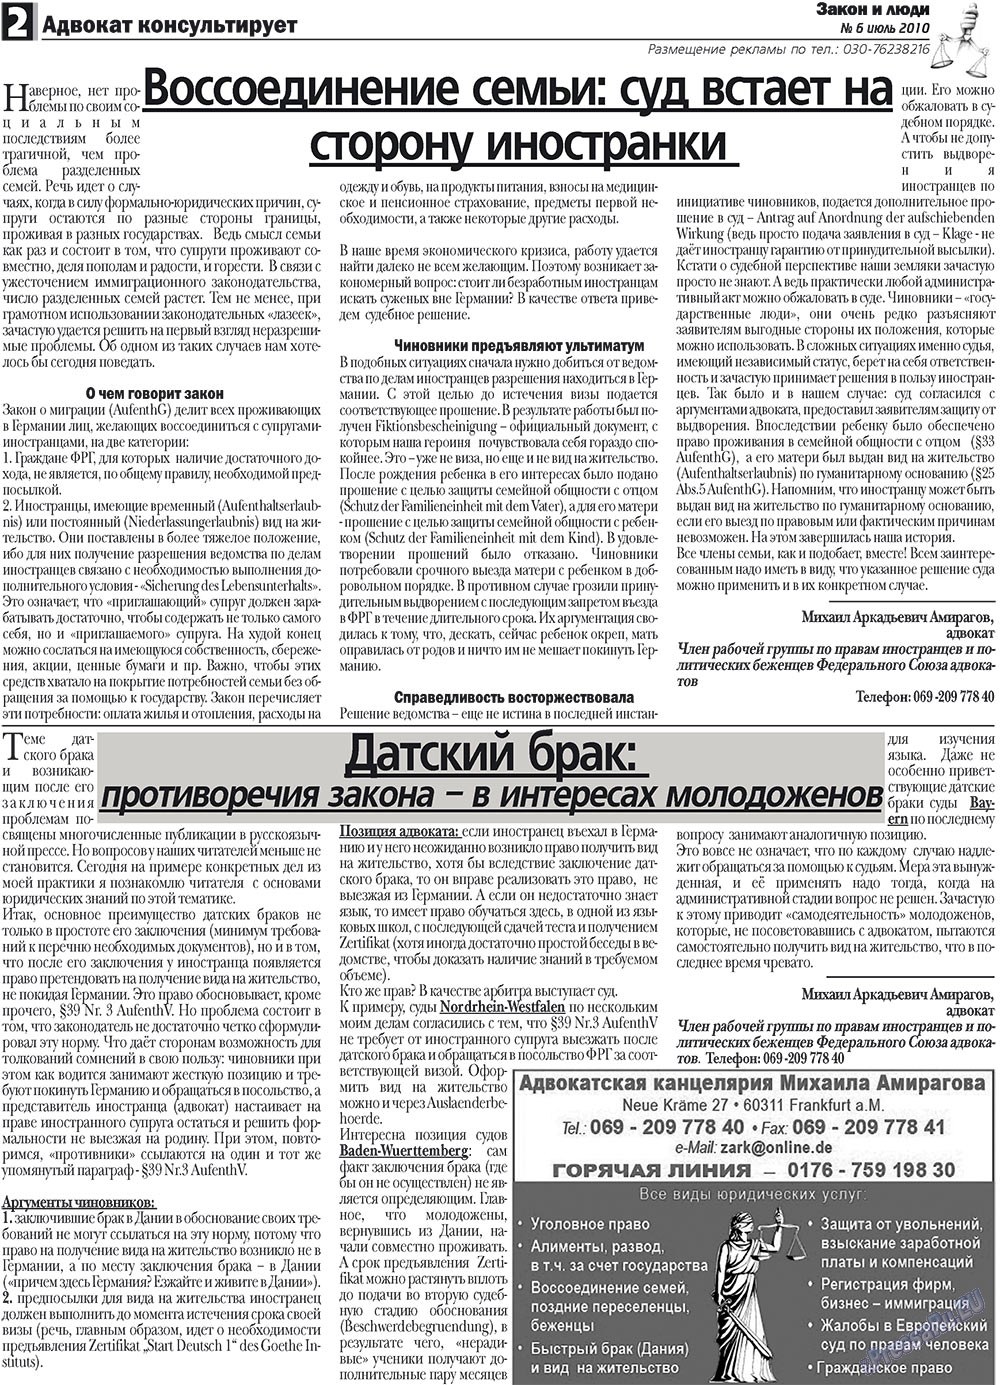 Закон и люди, газета. 2010 №6 стр.2